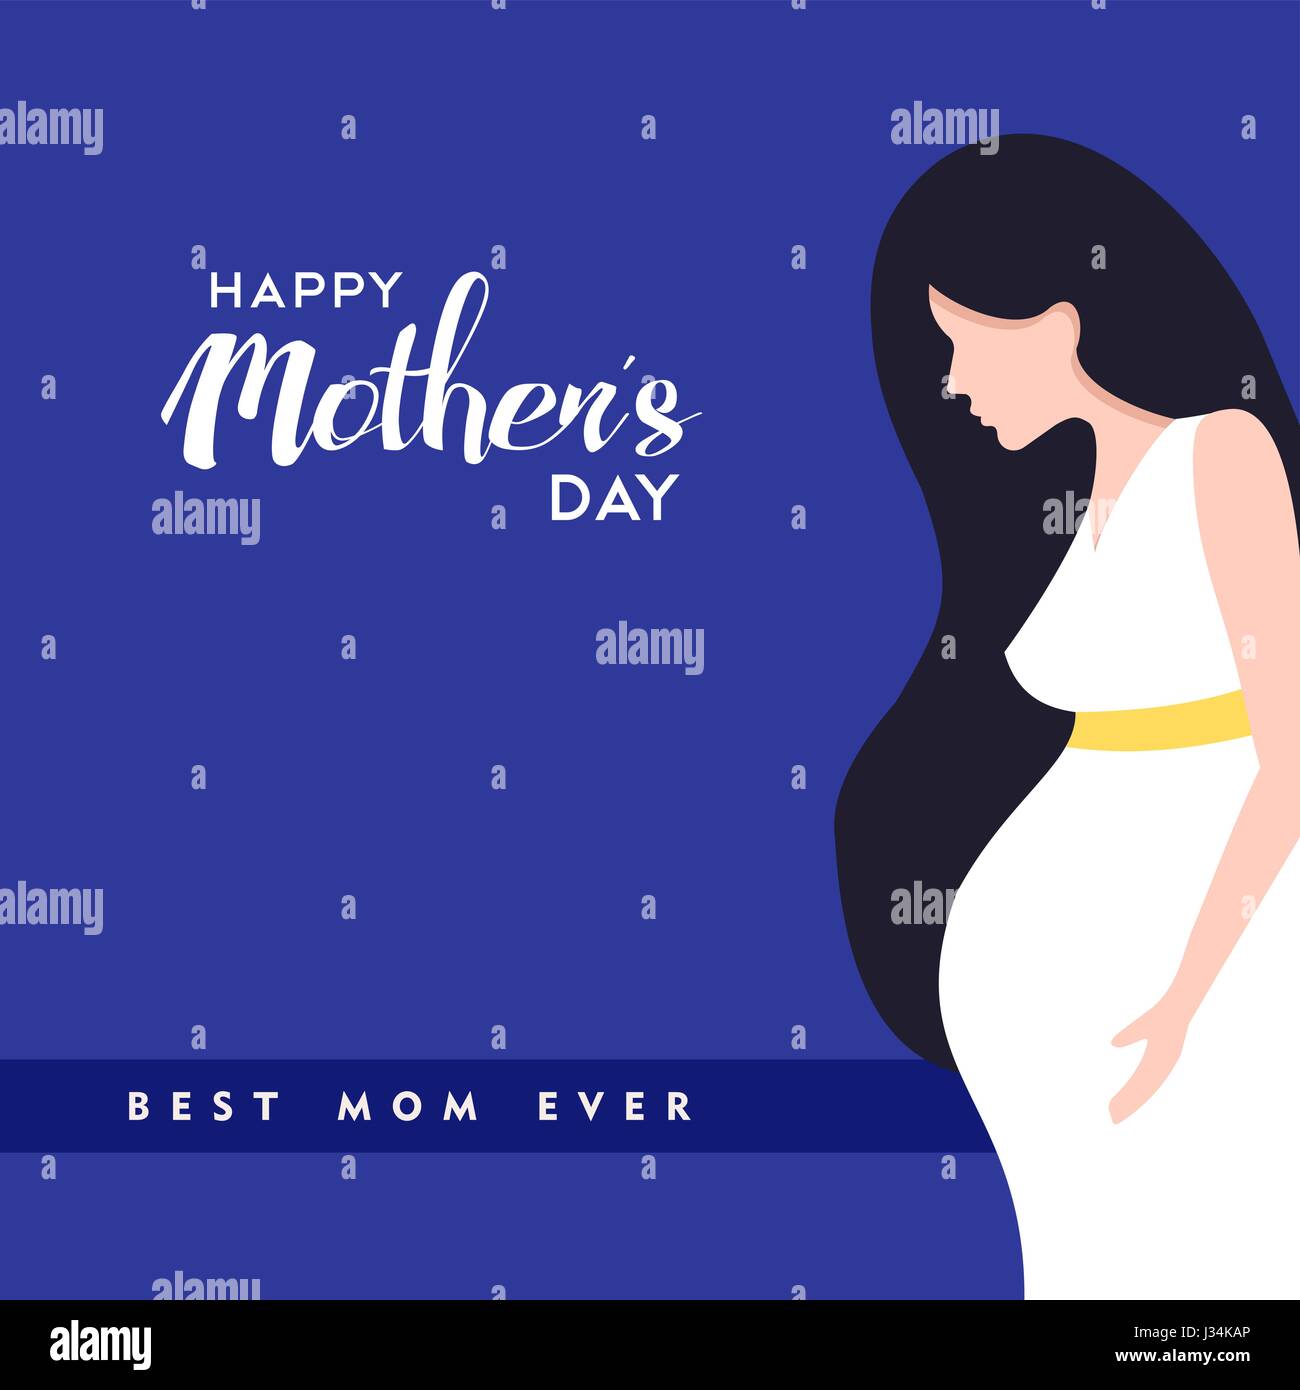 Happy mothers day illustration, femme enceinte avec maman citations d'amour. Vecteur EPS10. Illustration de Vecteur